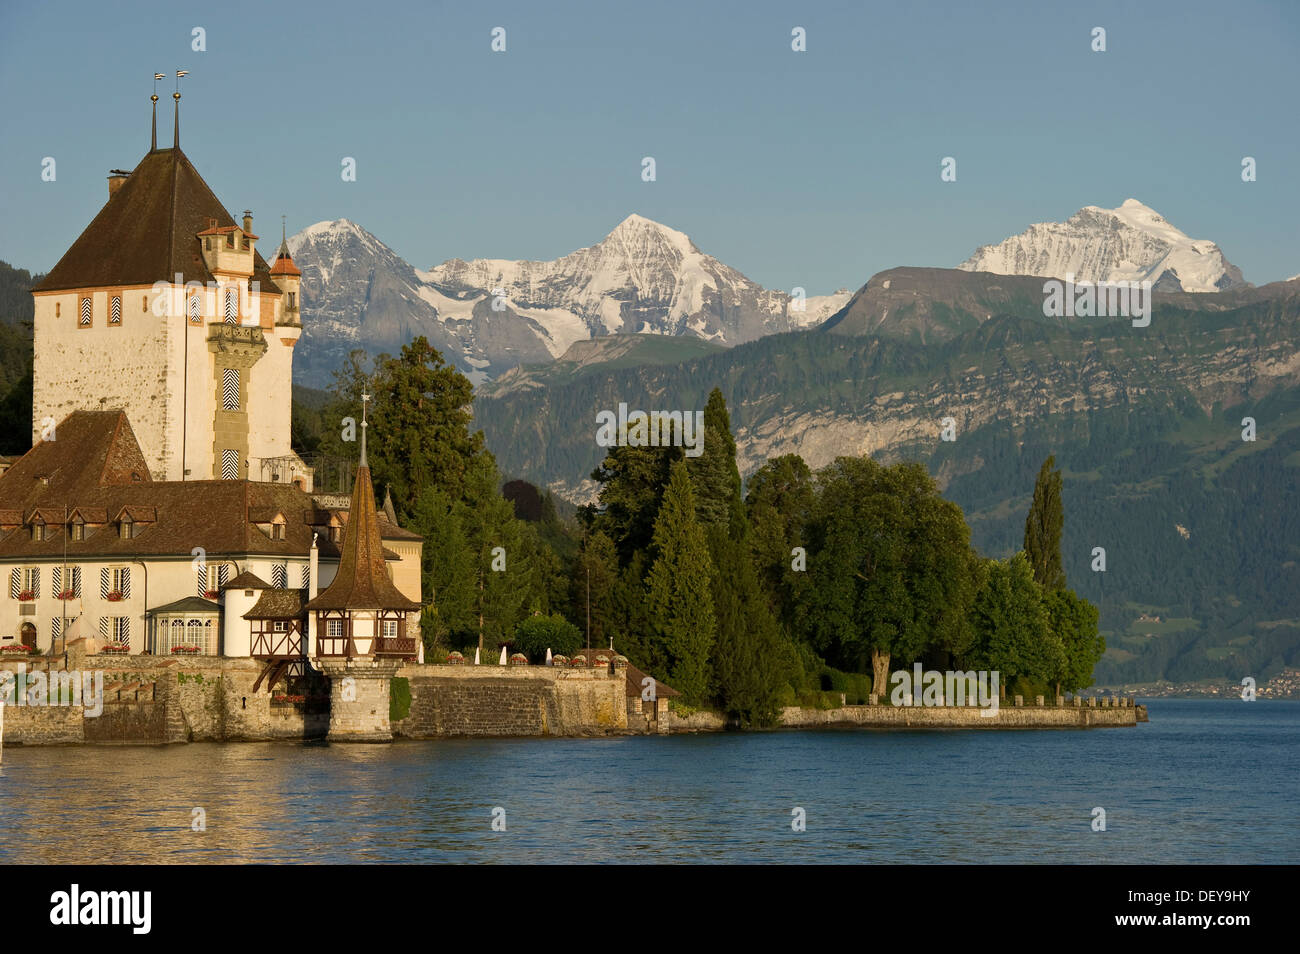 Il castello di Oberhofen, nella parte anteriore del Moench, Eiger e Jungfrau montagne, Oberhofen, il lago di Thun, il Cantone di Berna, Svizzera Foto Stock